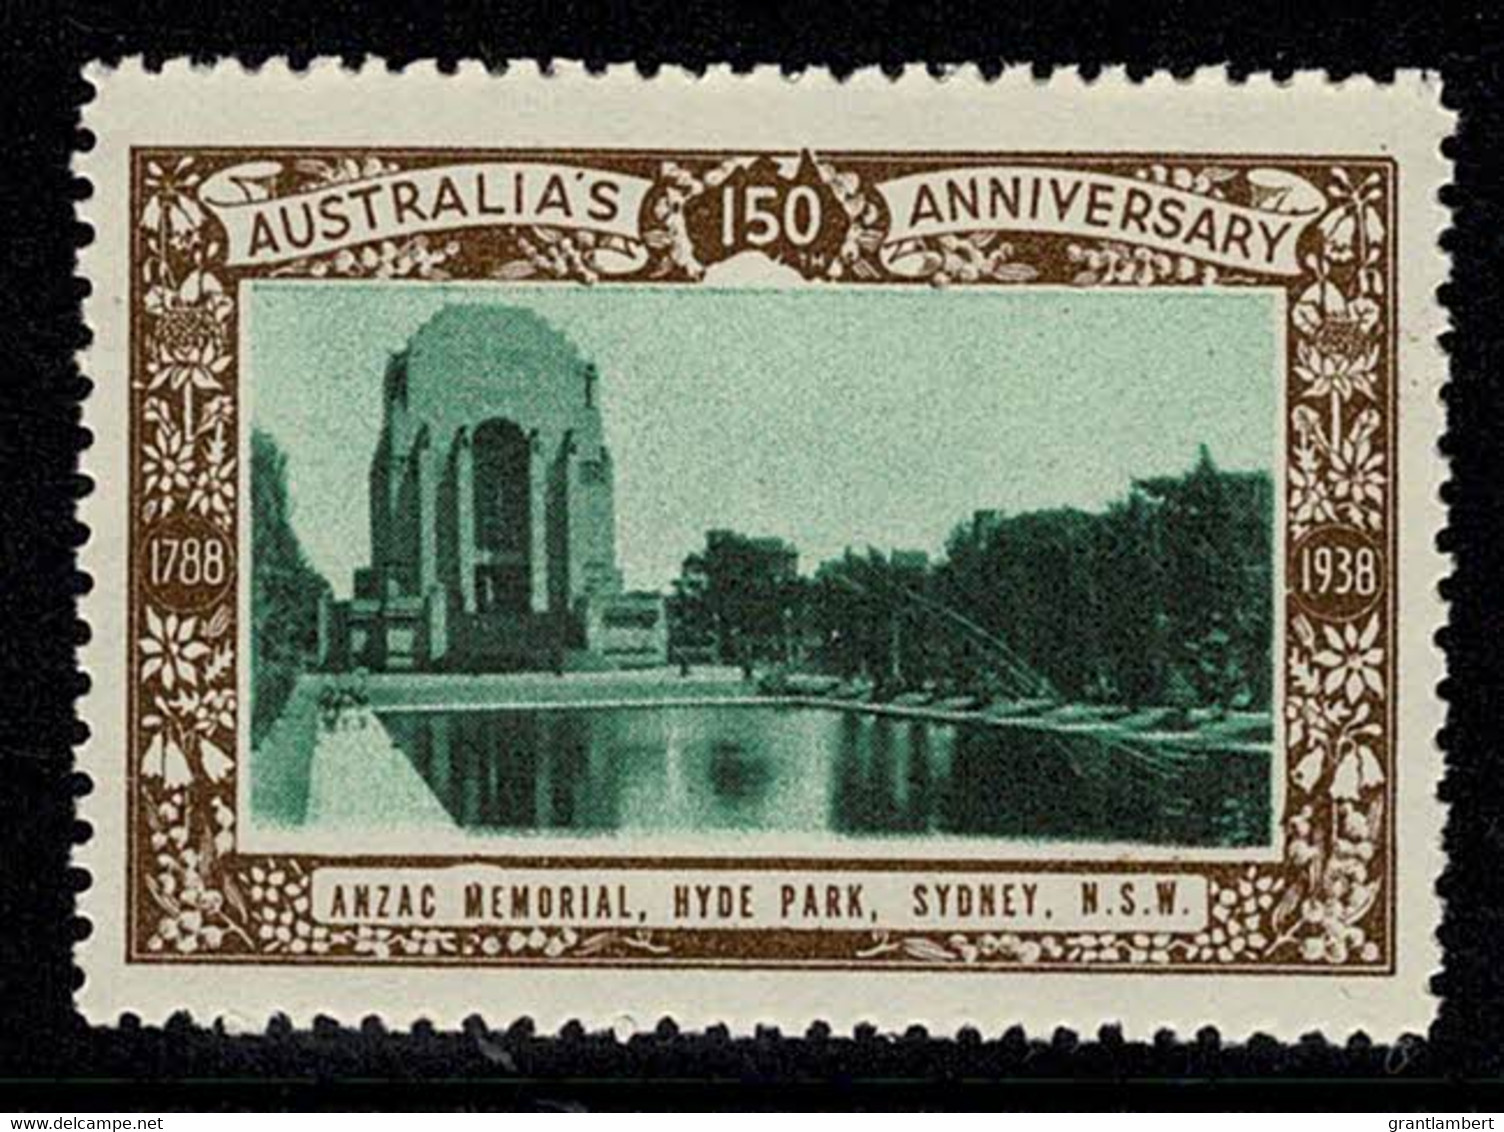 Australia 1938 ANZAC Memorial, Hyde Park, Sydney - NSW 150th Anniversary Cinderella MNH - Cinderellas